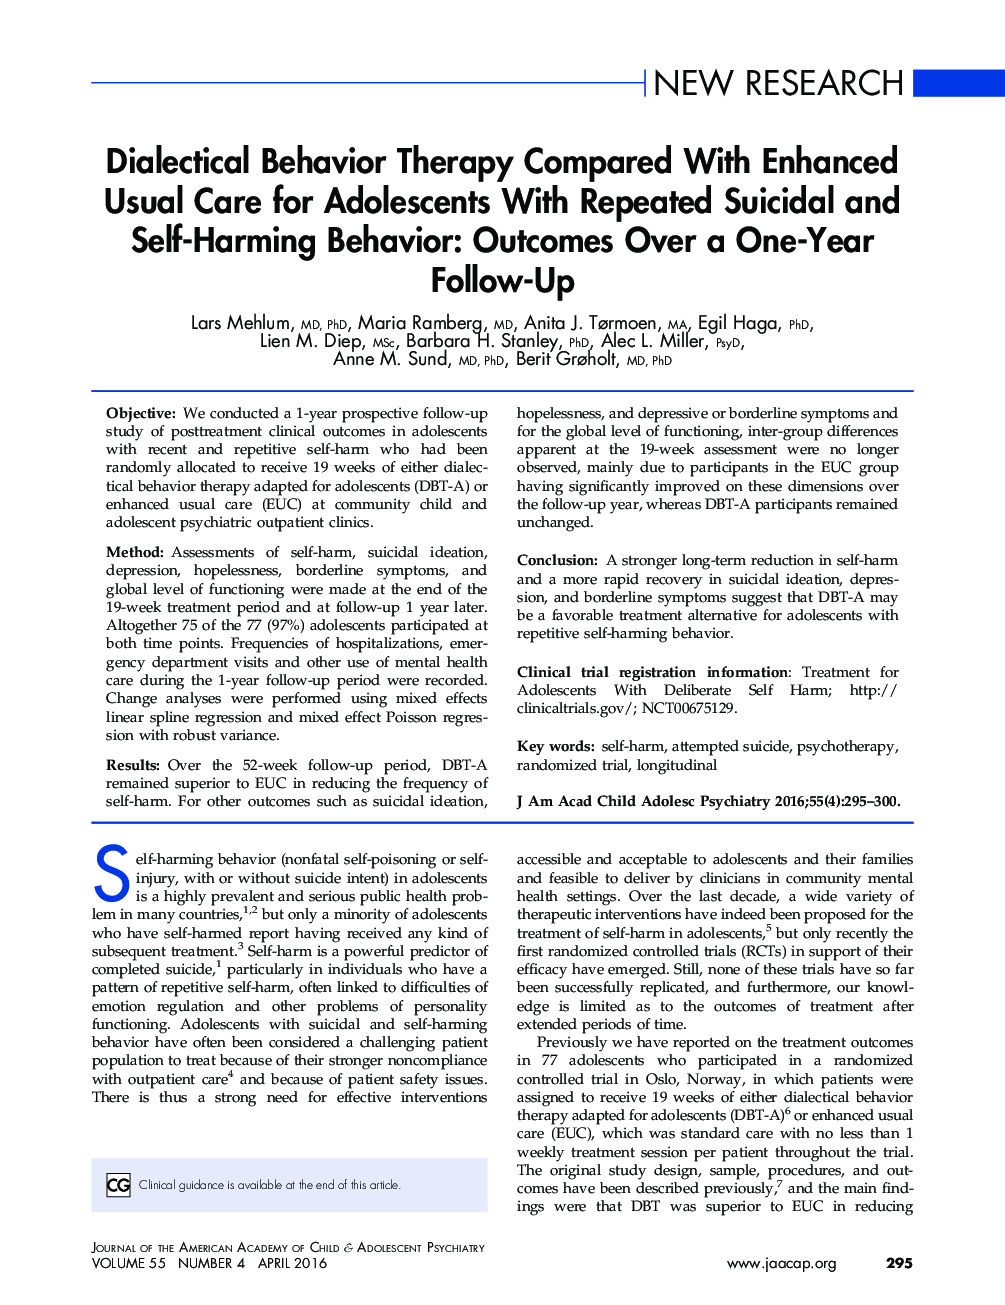 رفتار درمانی دیالکتیکی در مقایسه با مراقبت معمول پیشرفته برای نوجوانان مبتلا به خودکشی مکرر و رفتار خودآزاری: نتایج بیش از یک سال پیگیری